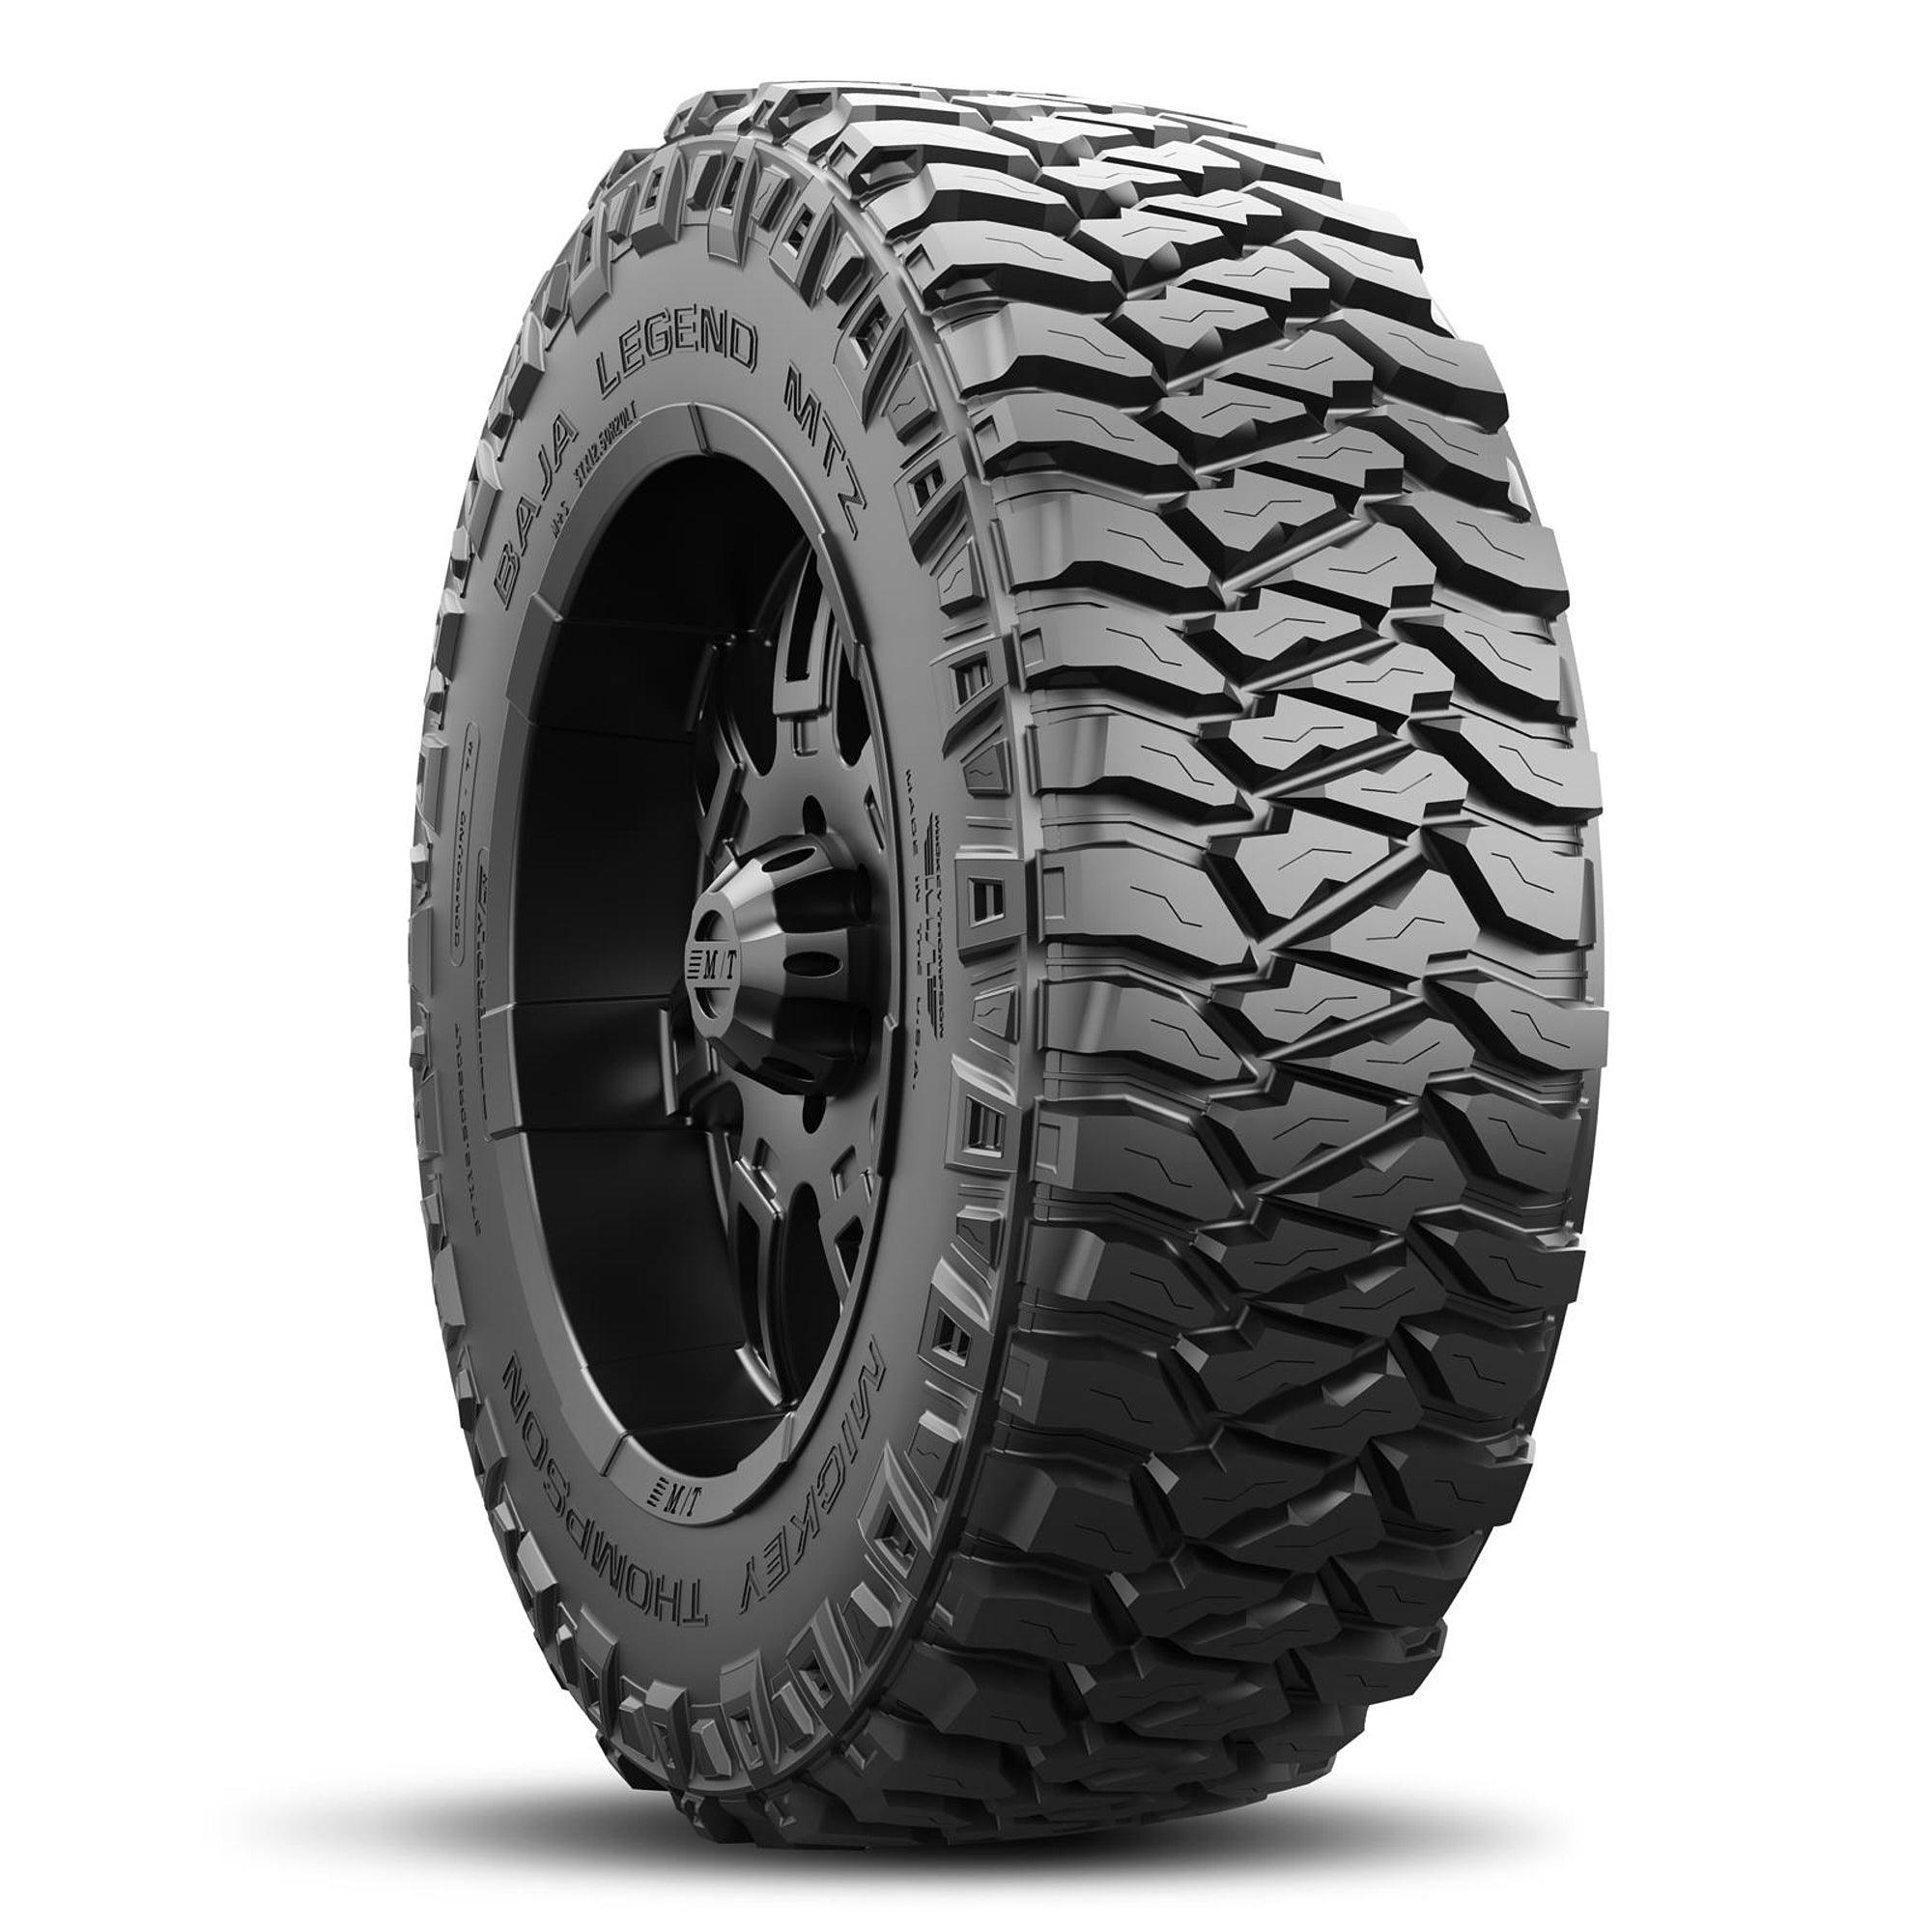 Baja Legend MTZ Tire 33X10.50R15LT 114Q - Burlile Performance Products